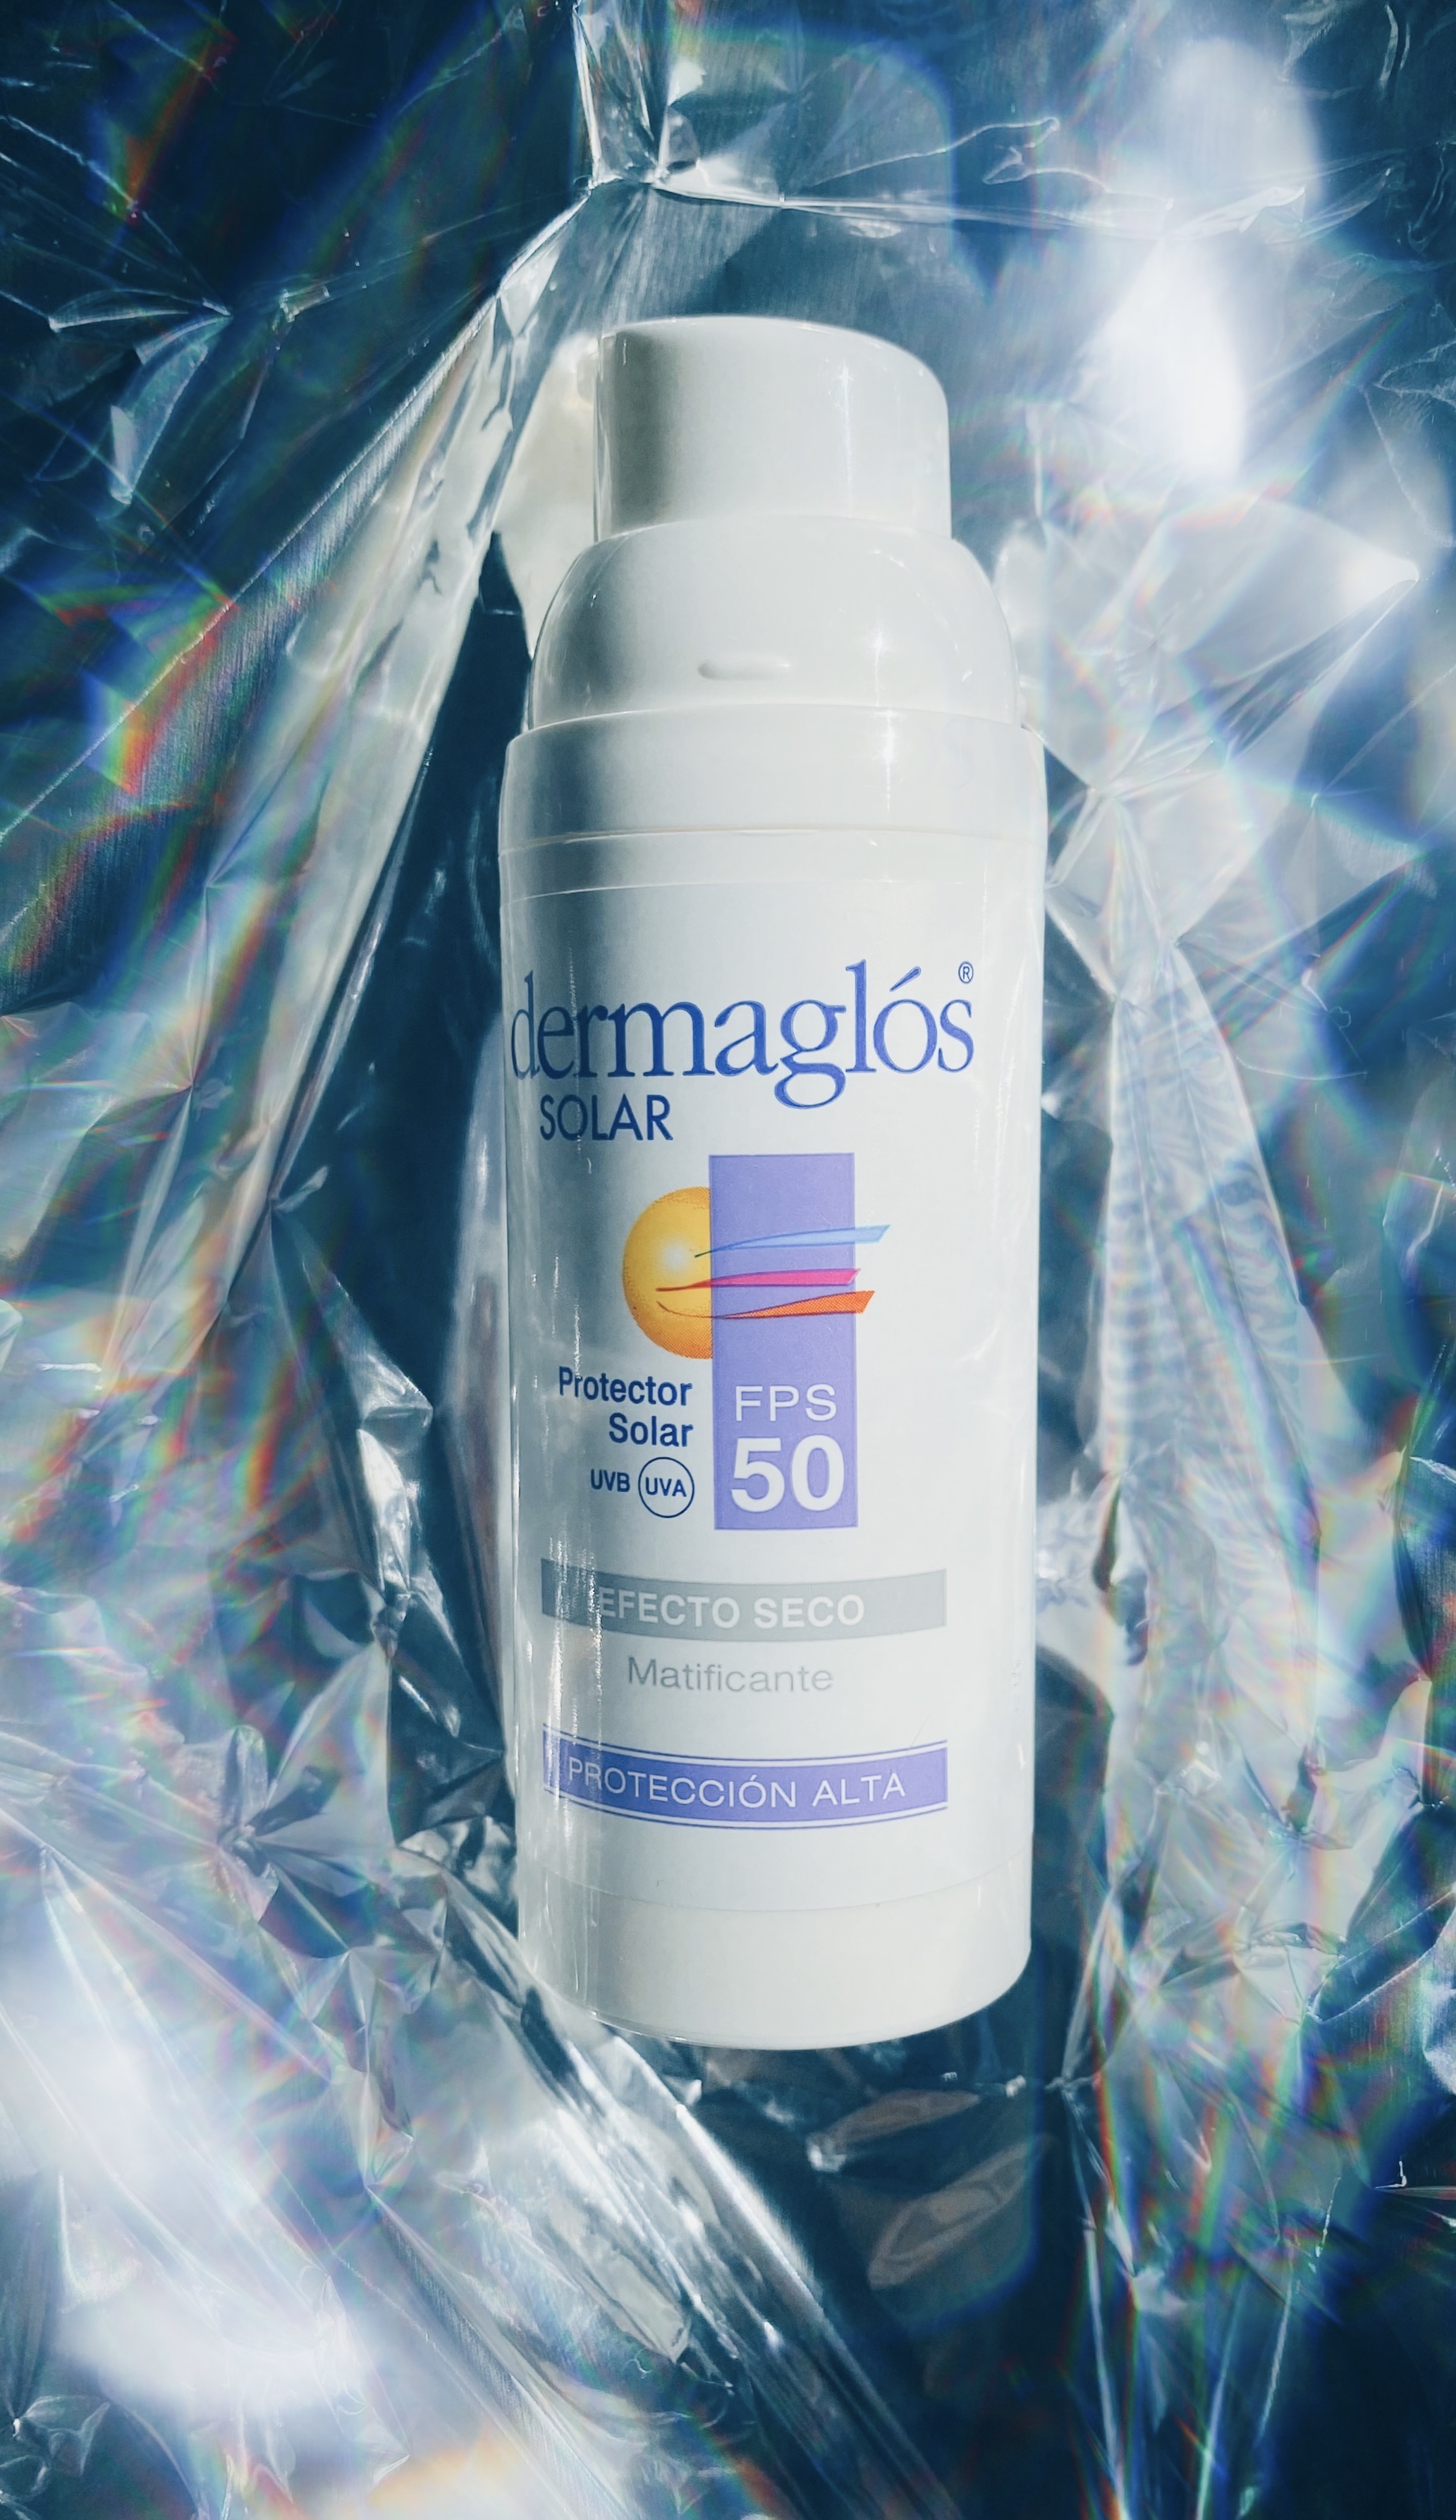 nuevo protector dermaglos spf 50 efecto seco matificante